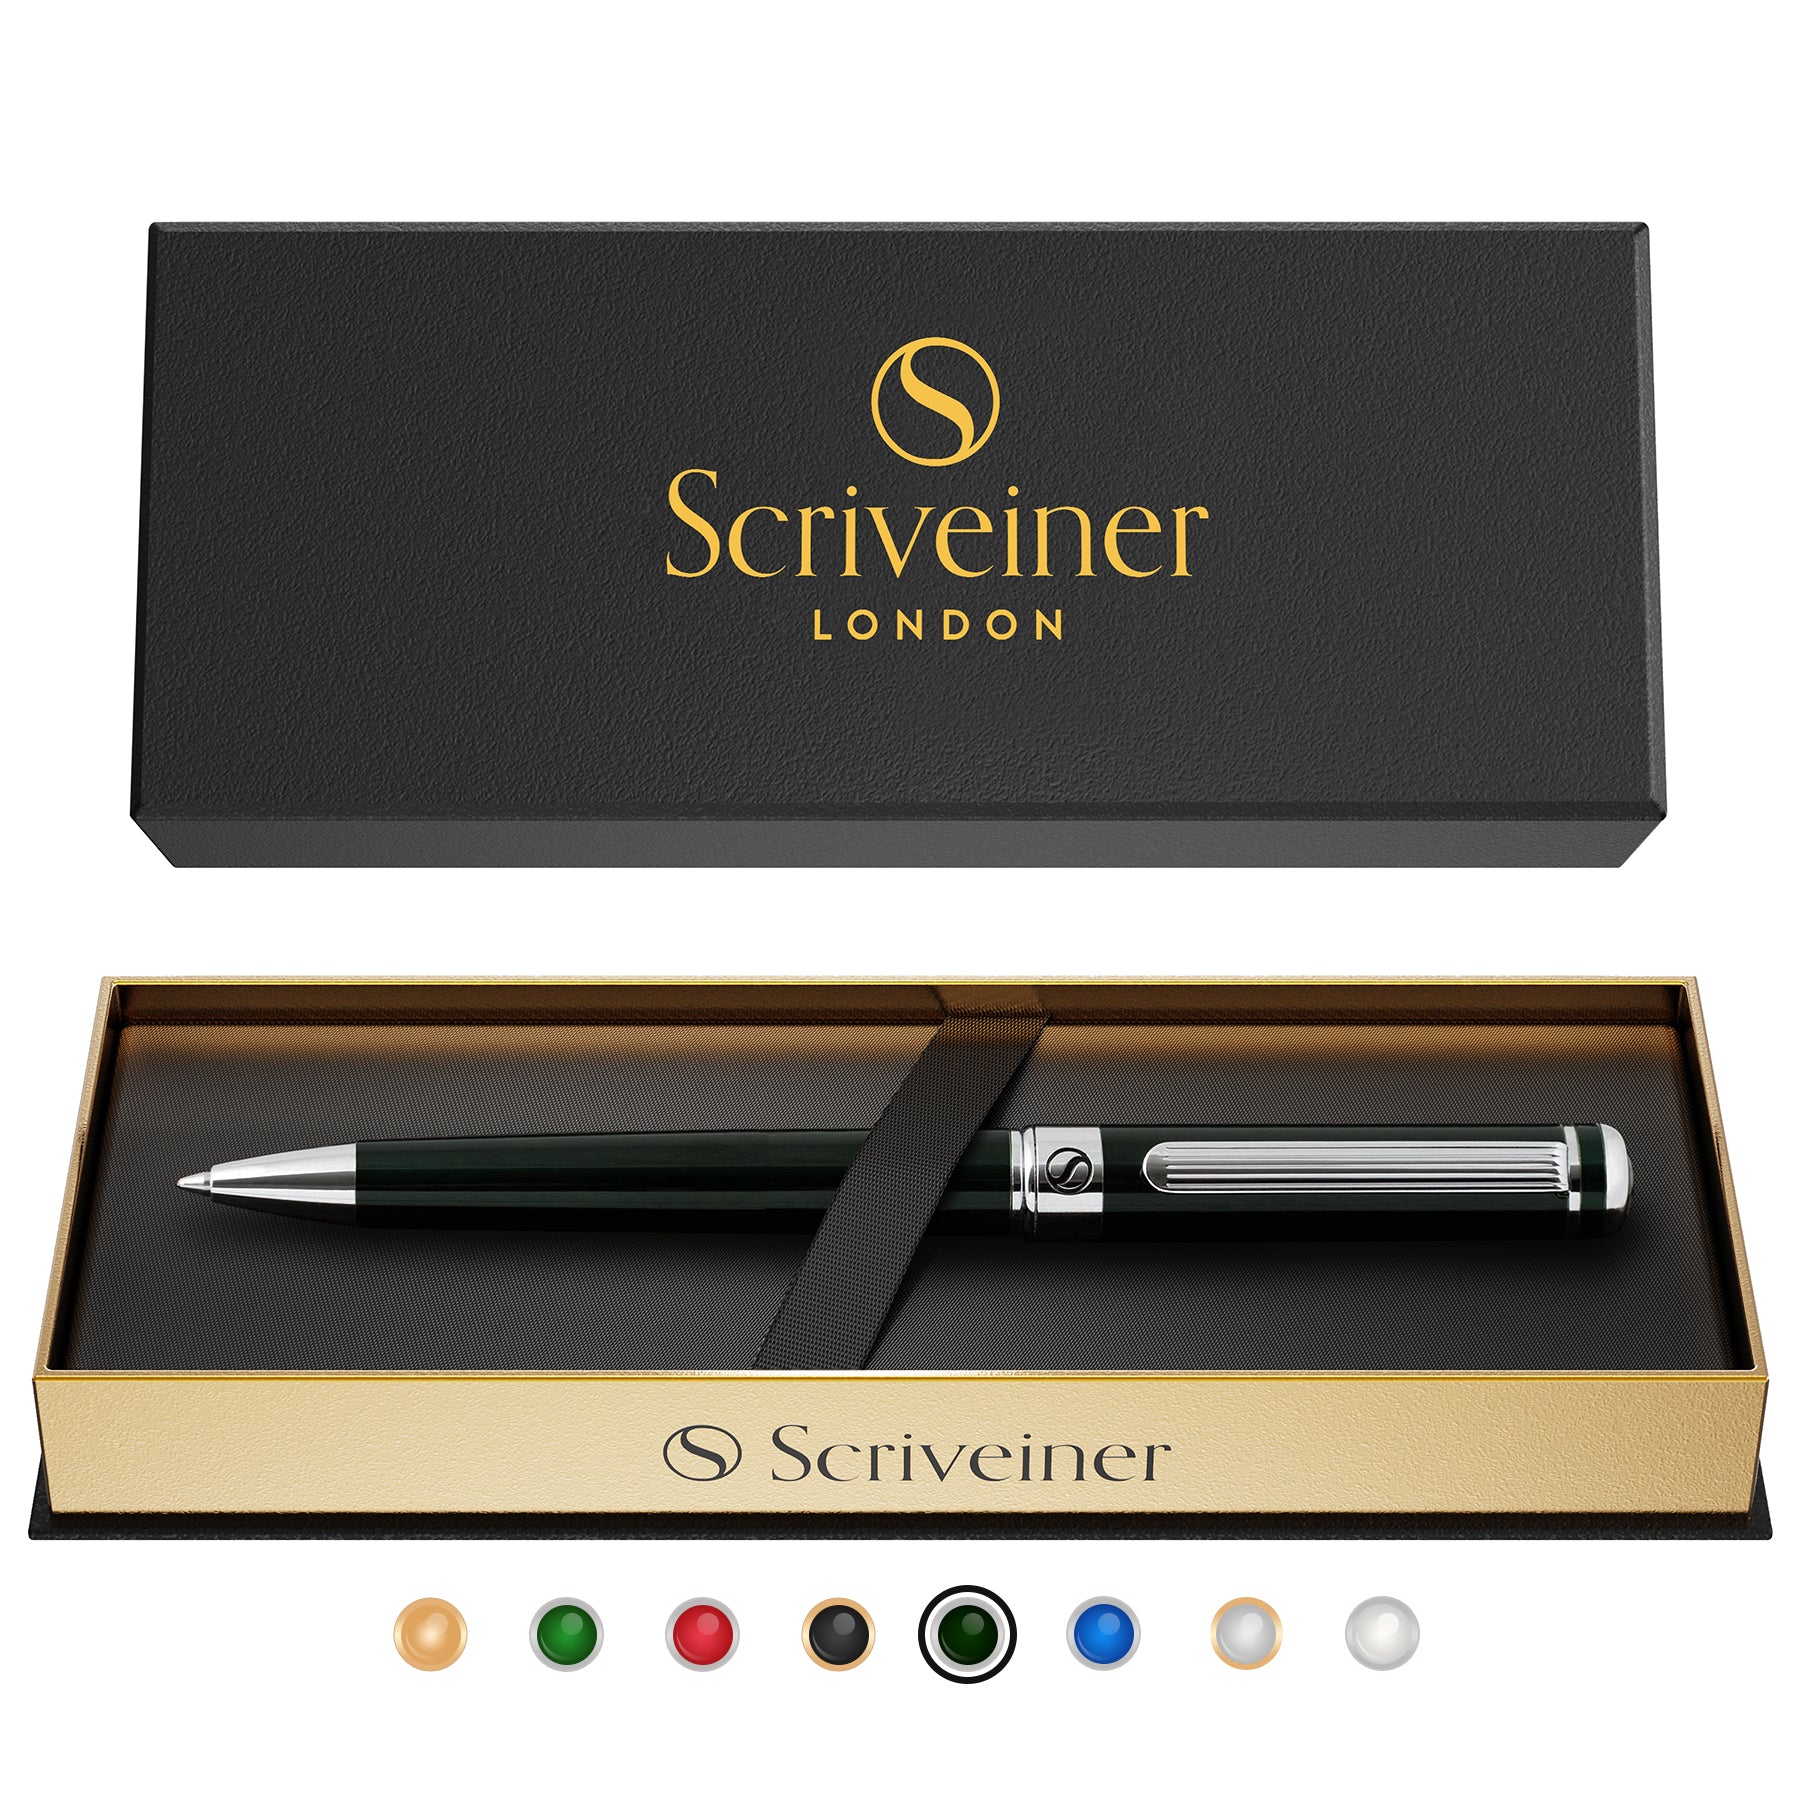 Scriveiner Black Green Ballpoint Pen - Black Green Luxury Pen, Chrome